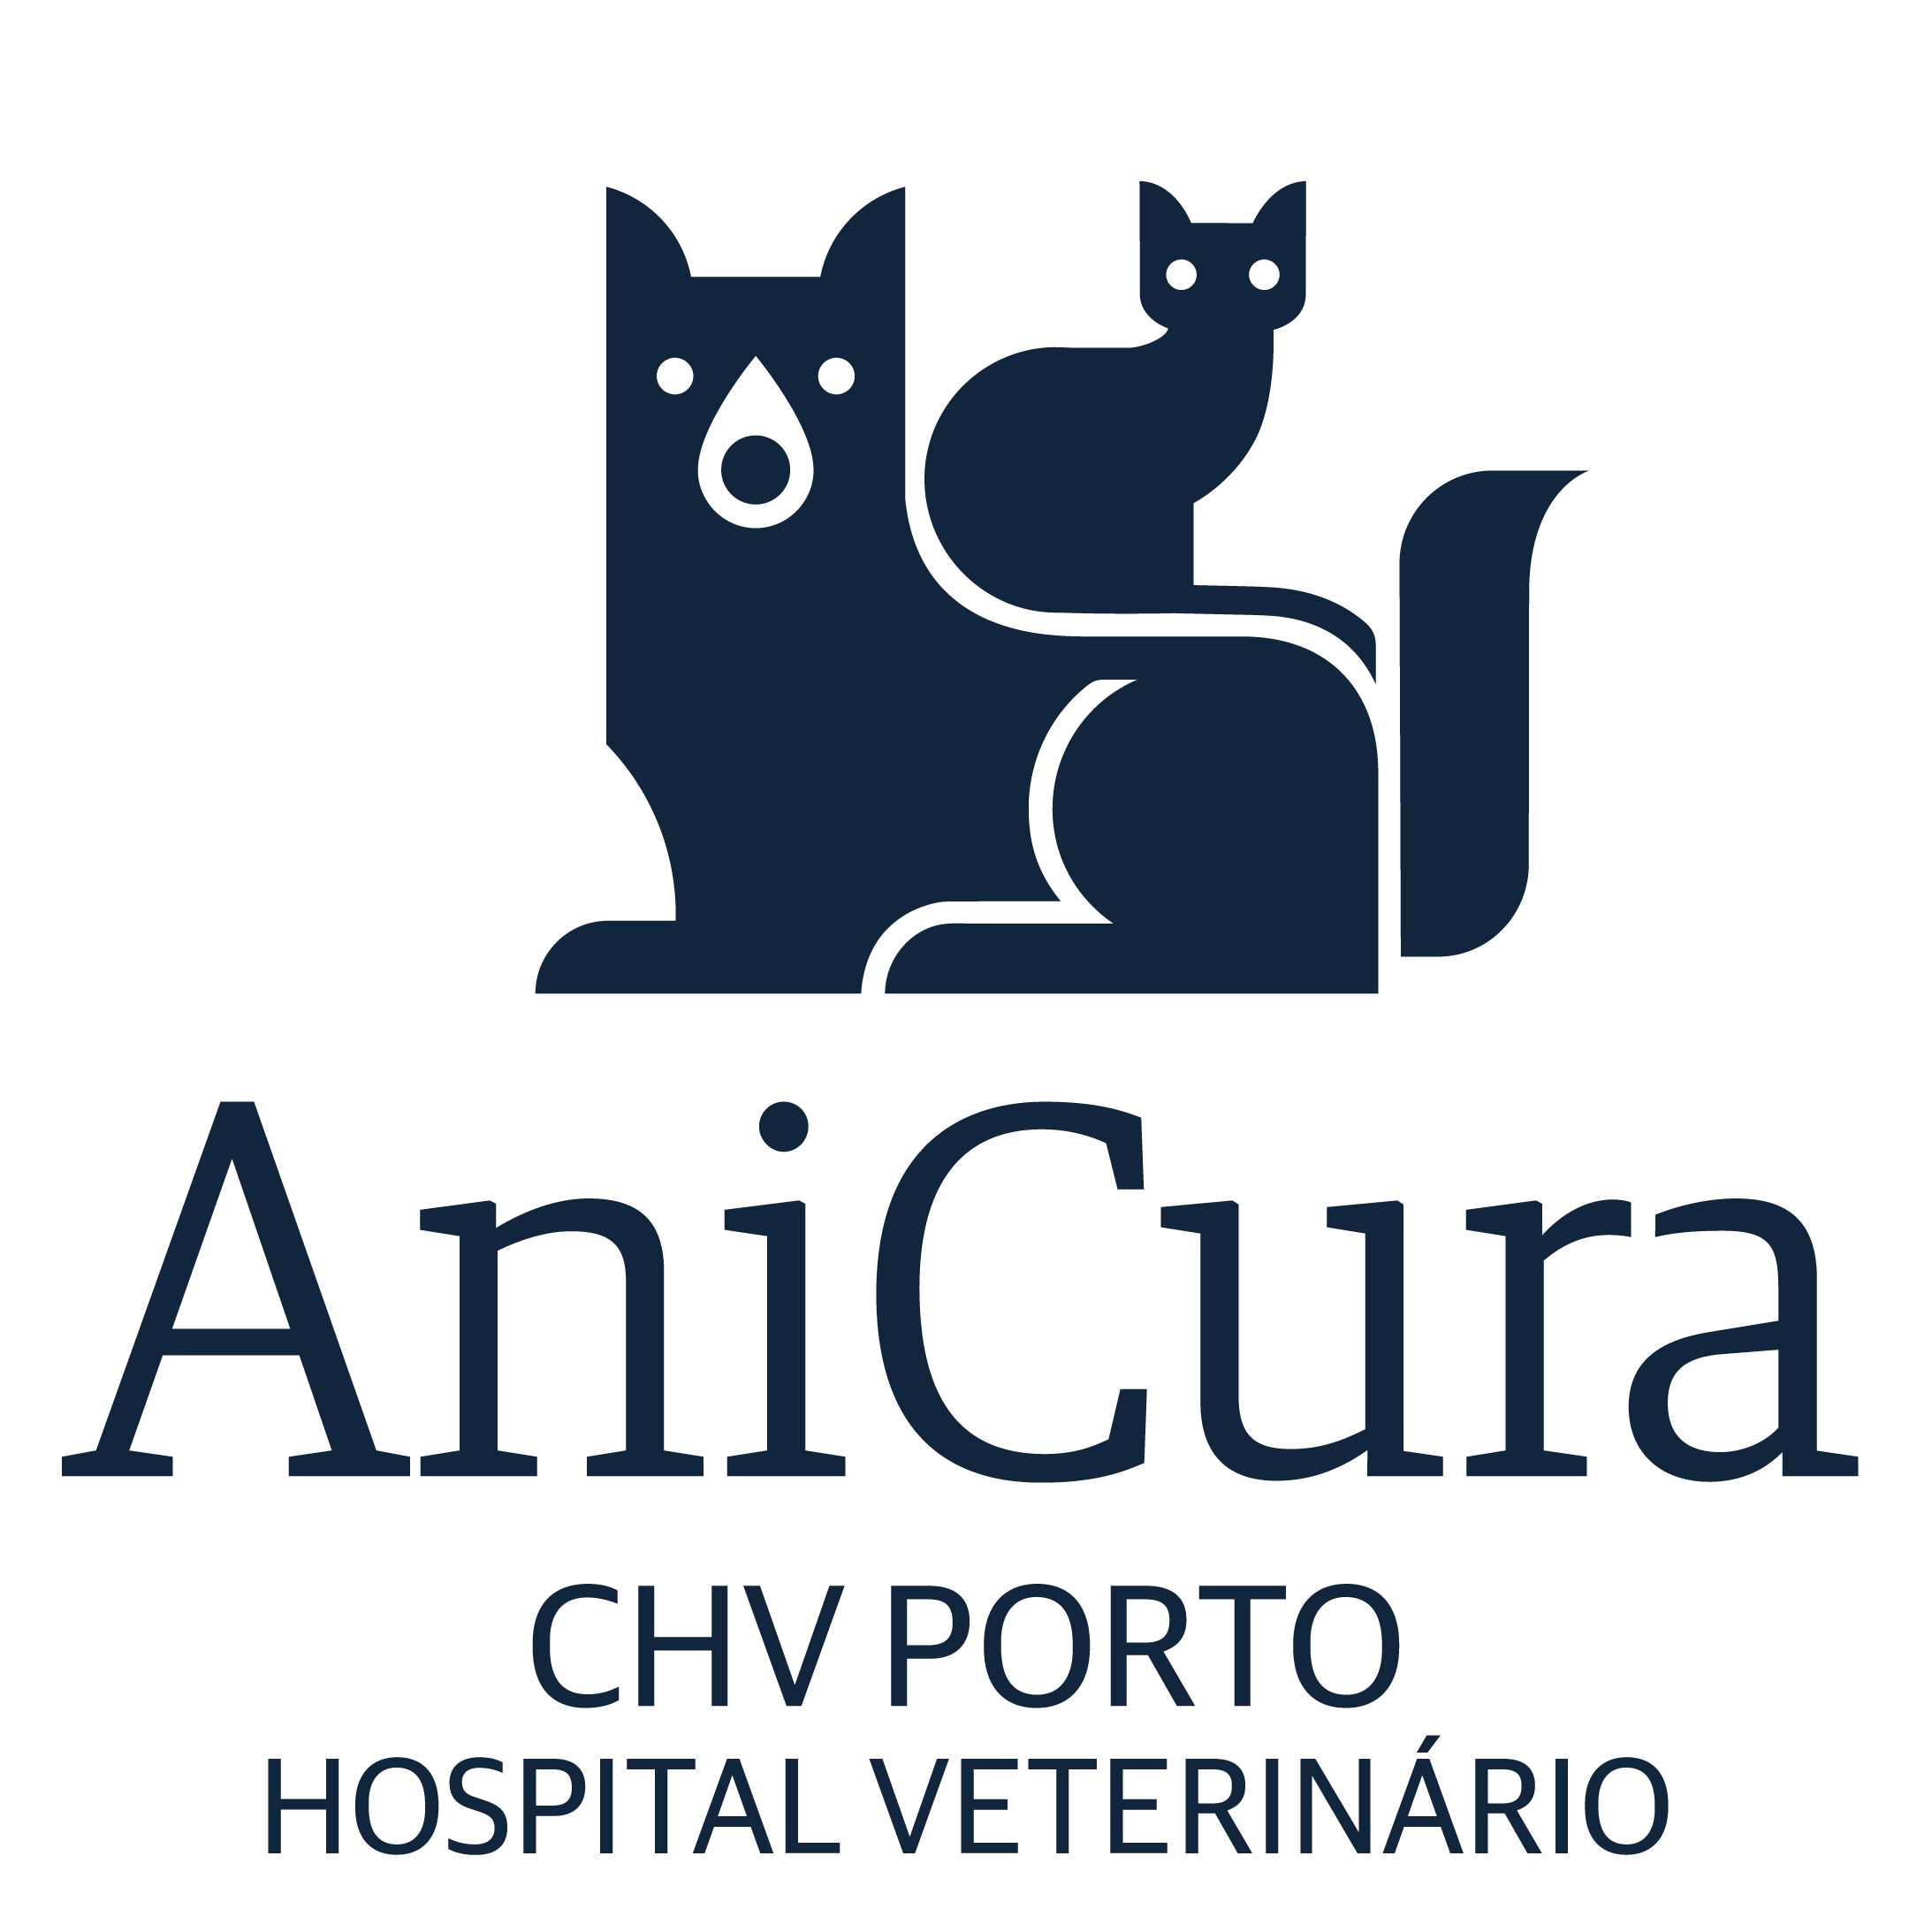 AniCura CHV Porto Hospital Veterinário logo